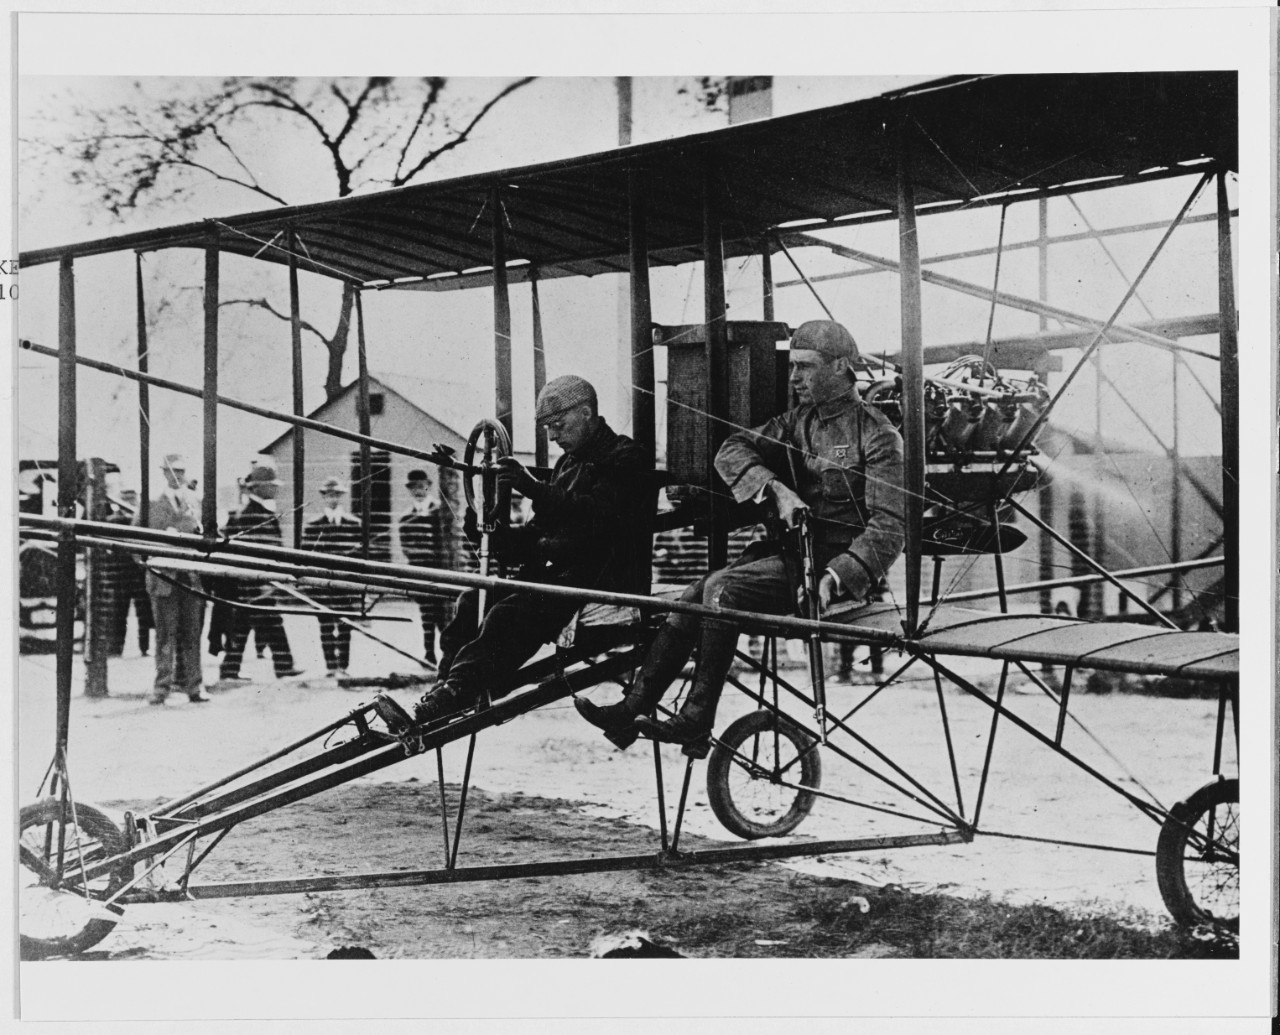 Curtiss pusher aircraft